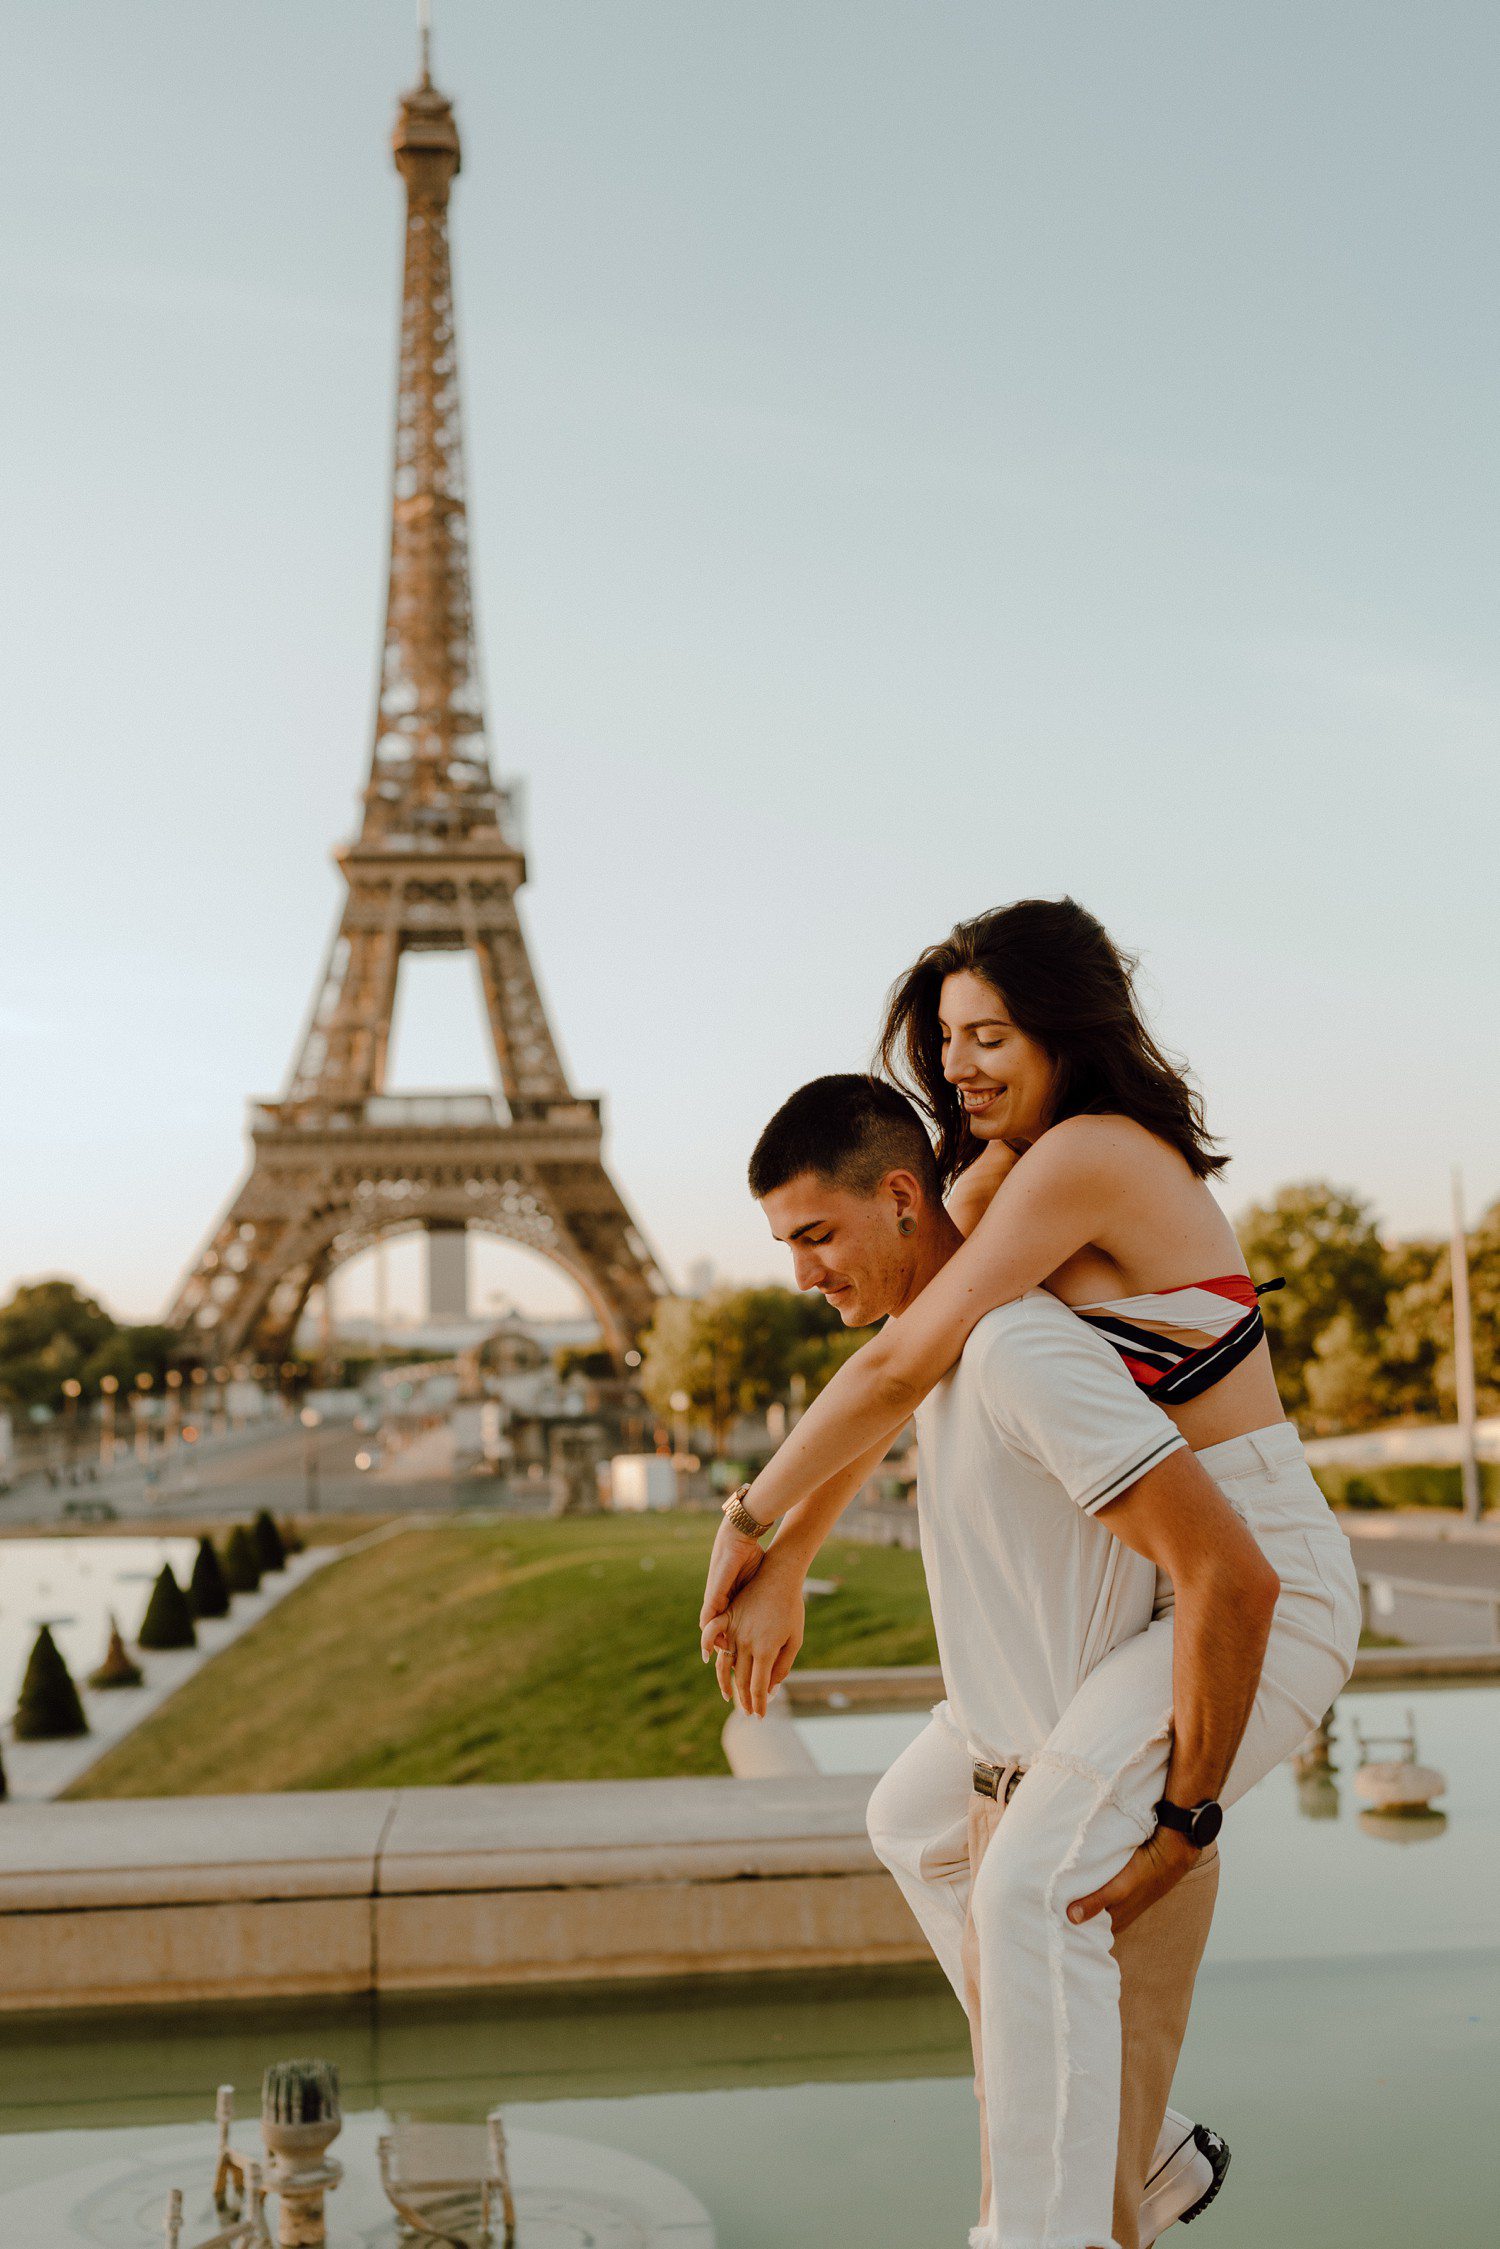 Eiffel Tower Couples Photos